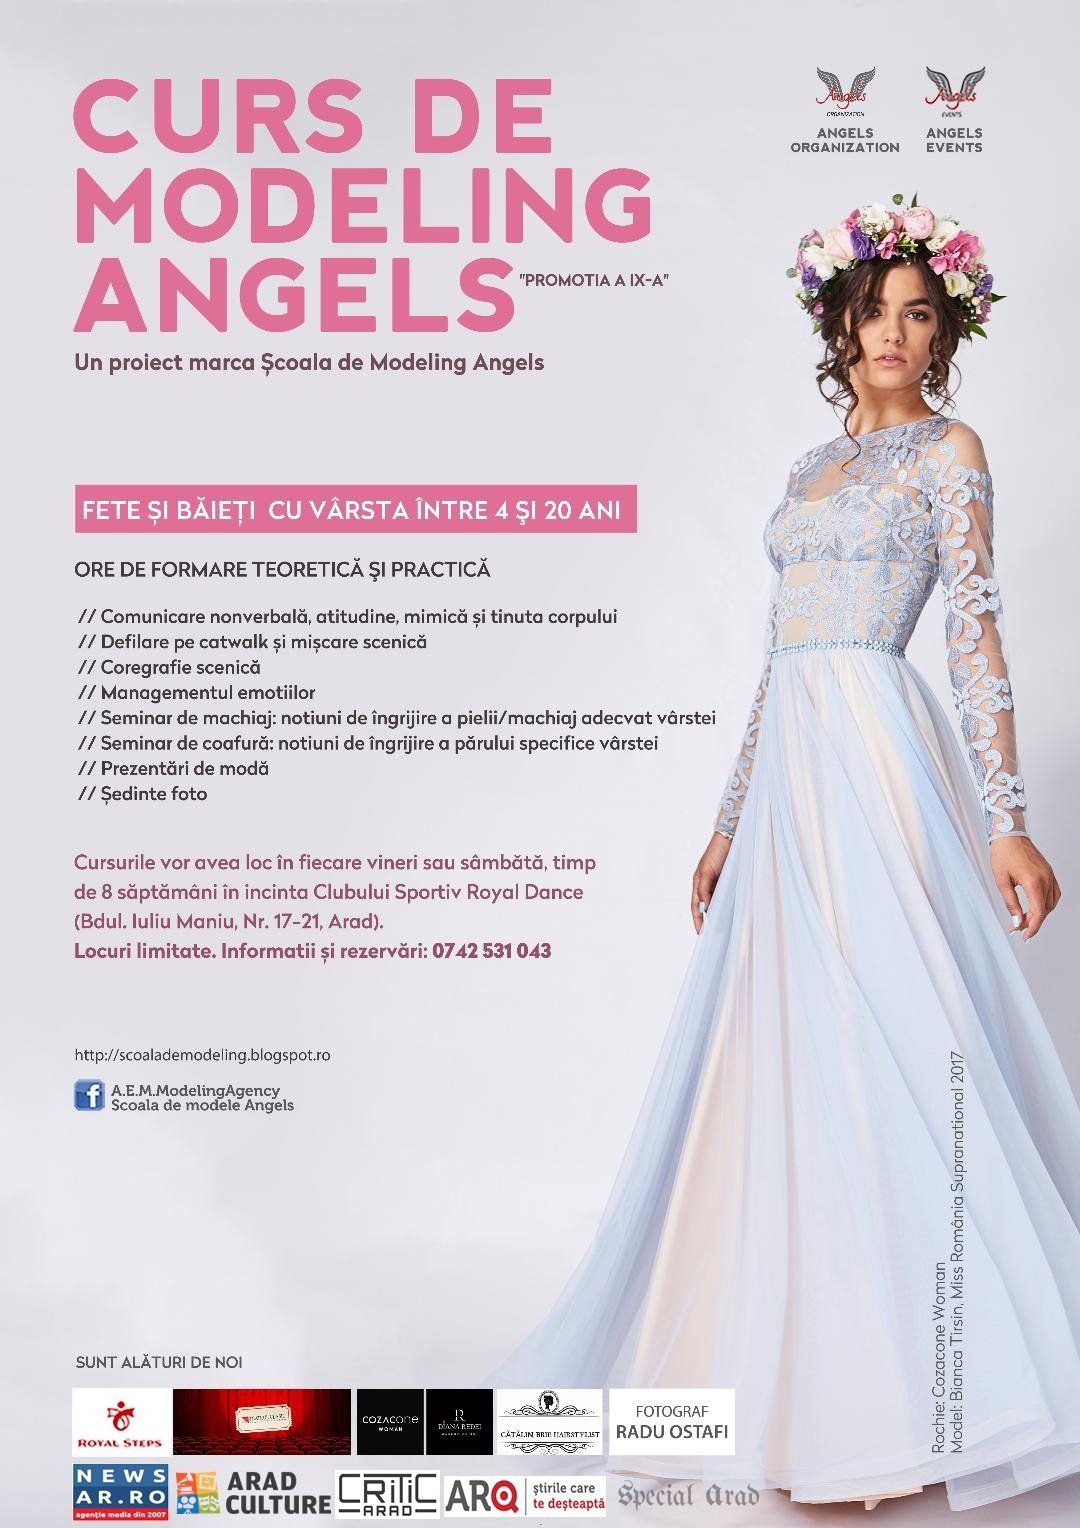 Cursuri de modeling, organizate de Angels Events și Asociația Angels Organization